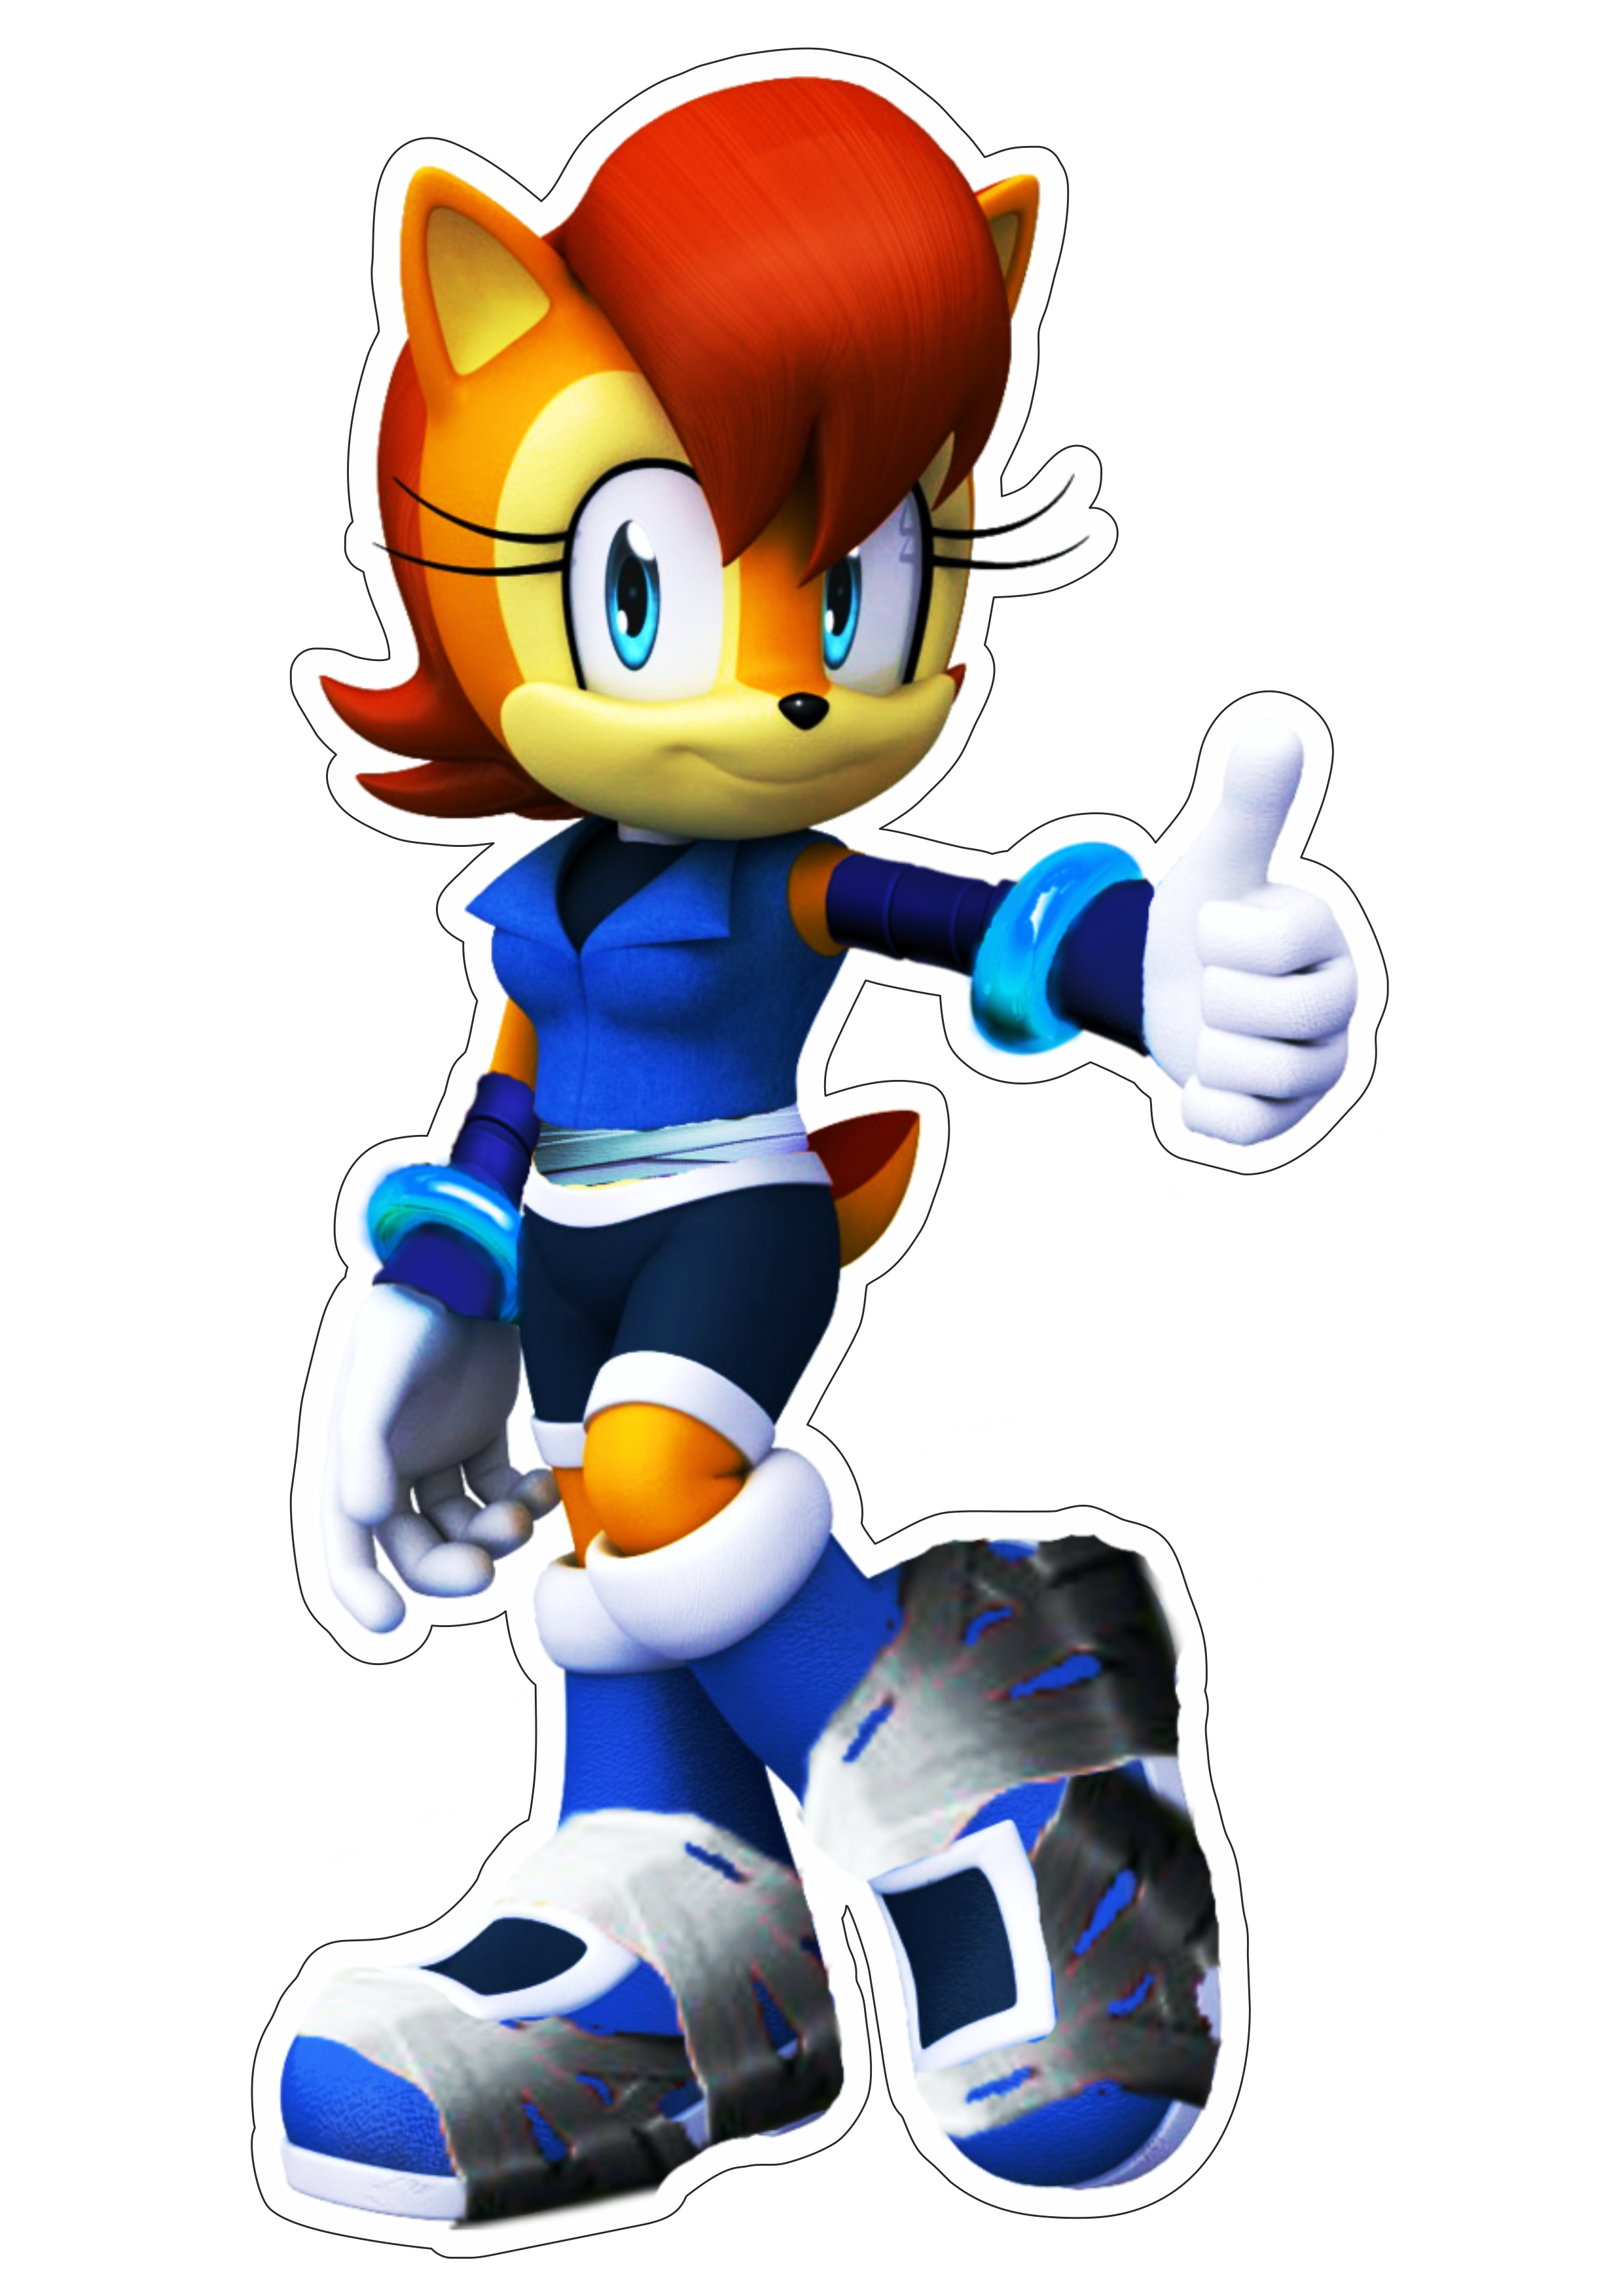 Sonic the hedgehog personagem de game Fiona Fox fundo transparente png